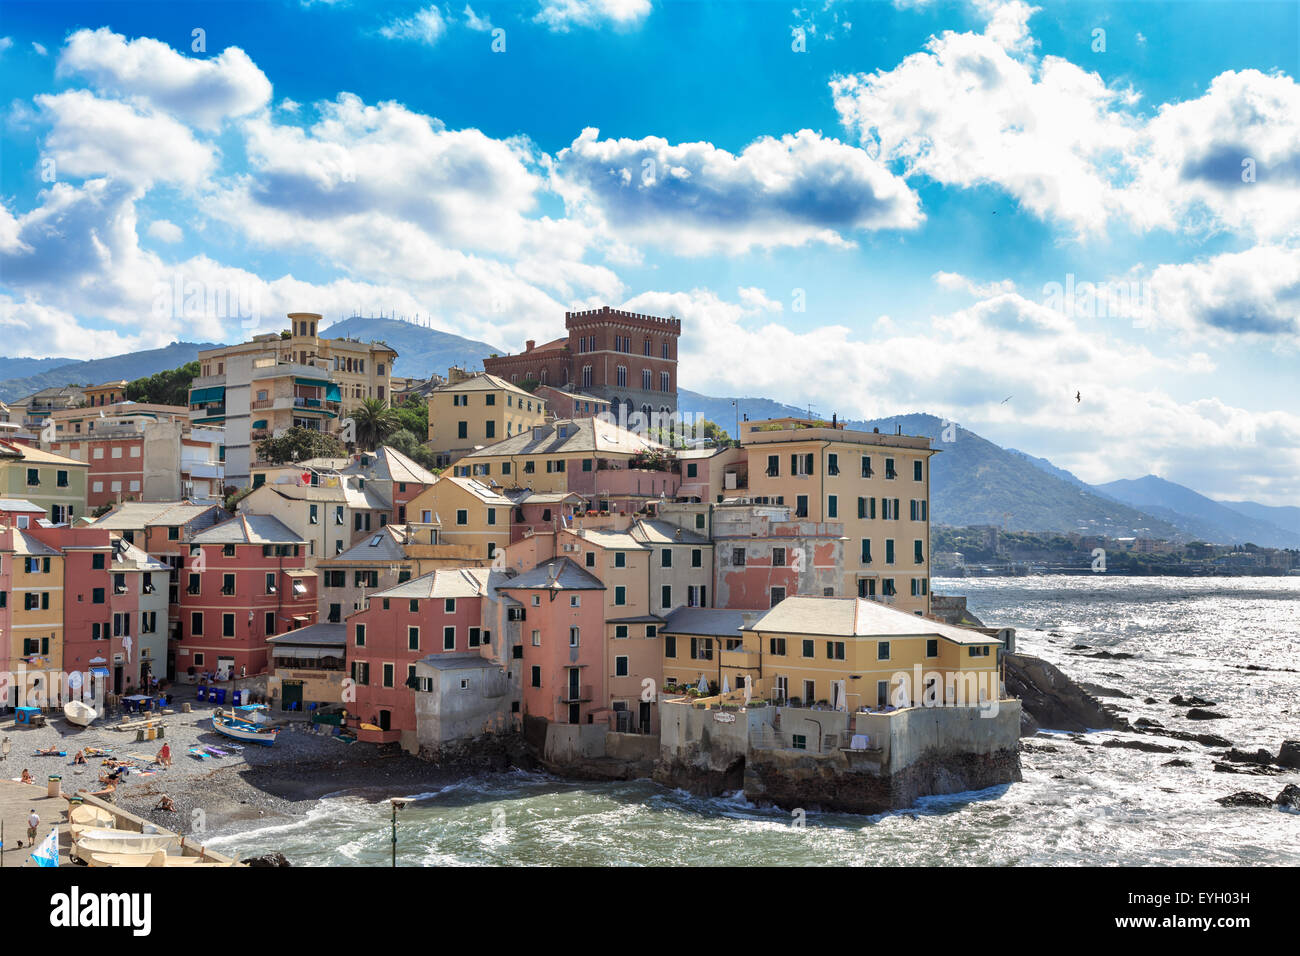 Caratteristico villaggio di pescatori di Boccadasse, Genova, Italia situato sul lungomare e sul lato orientale del lungomare di Corso Italia Foto Stock